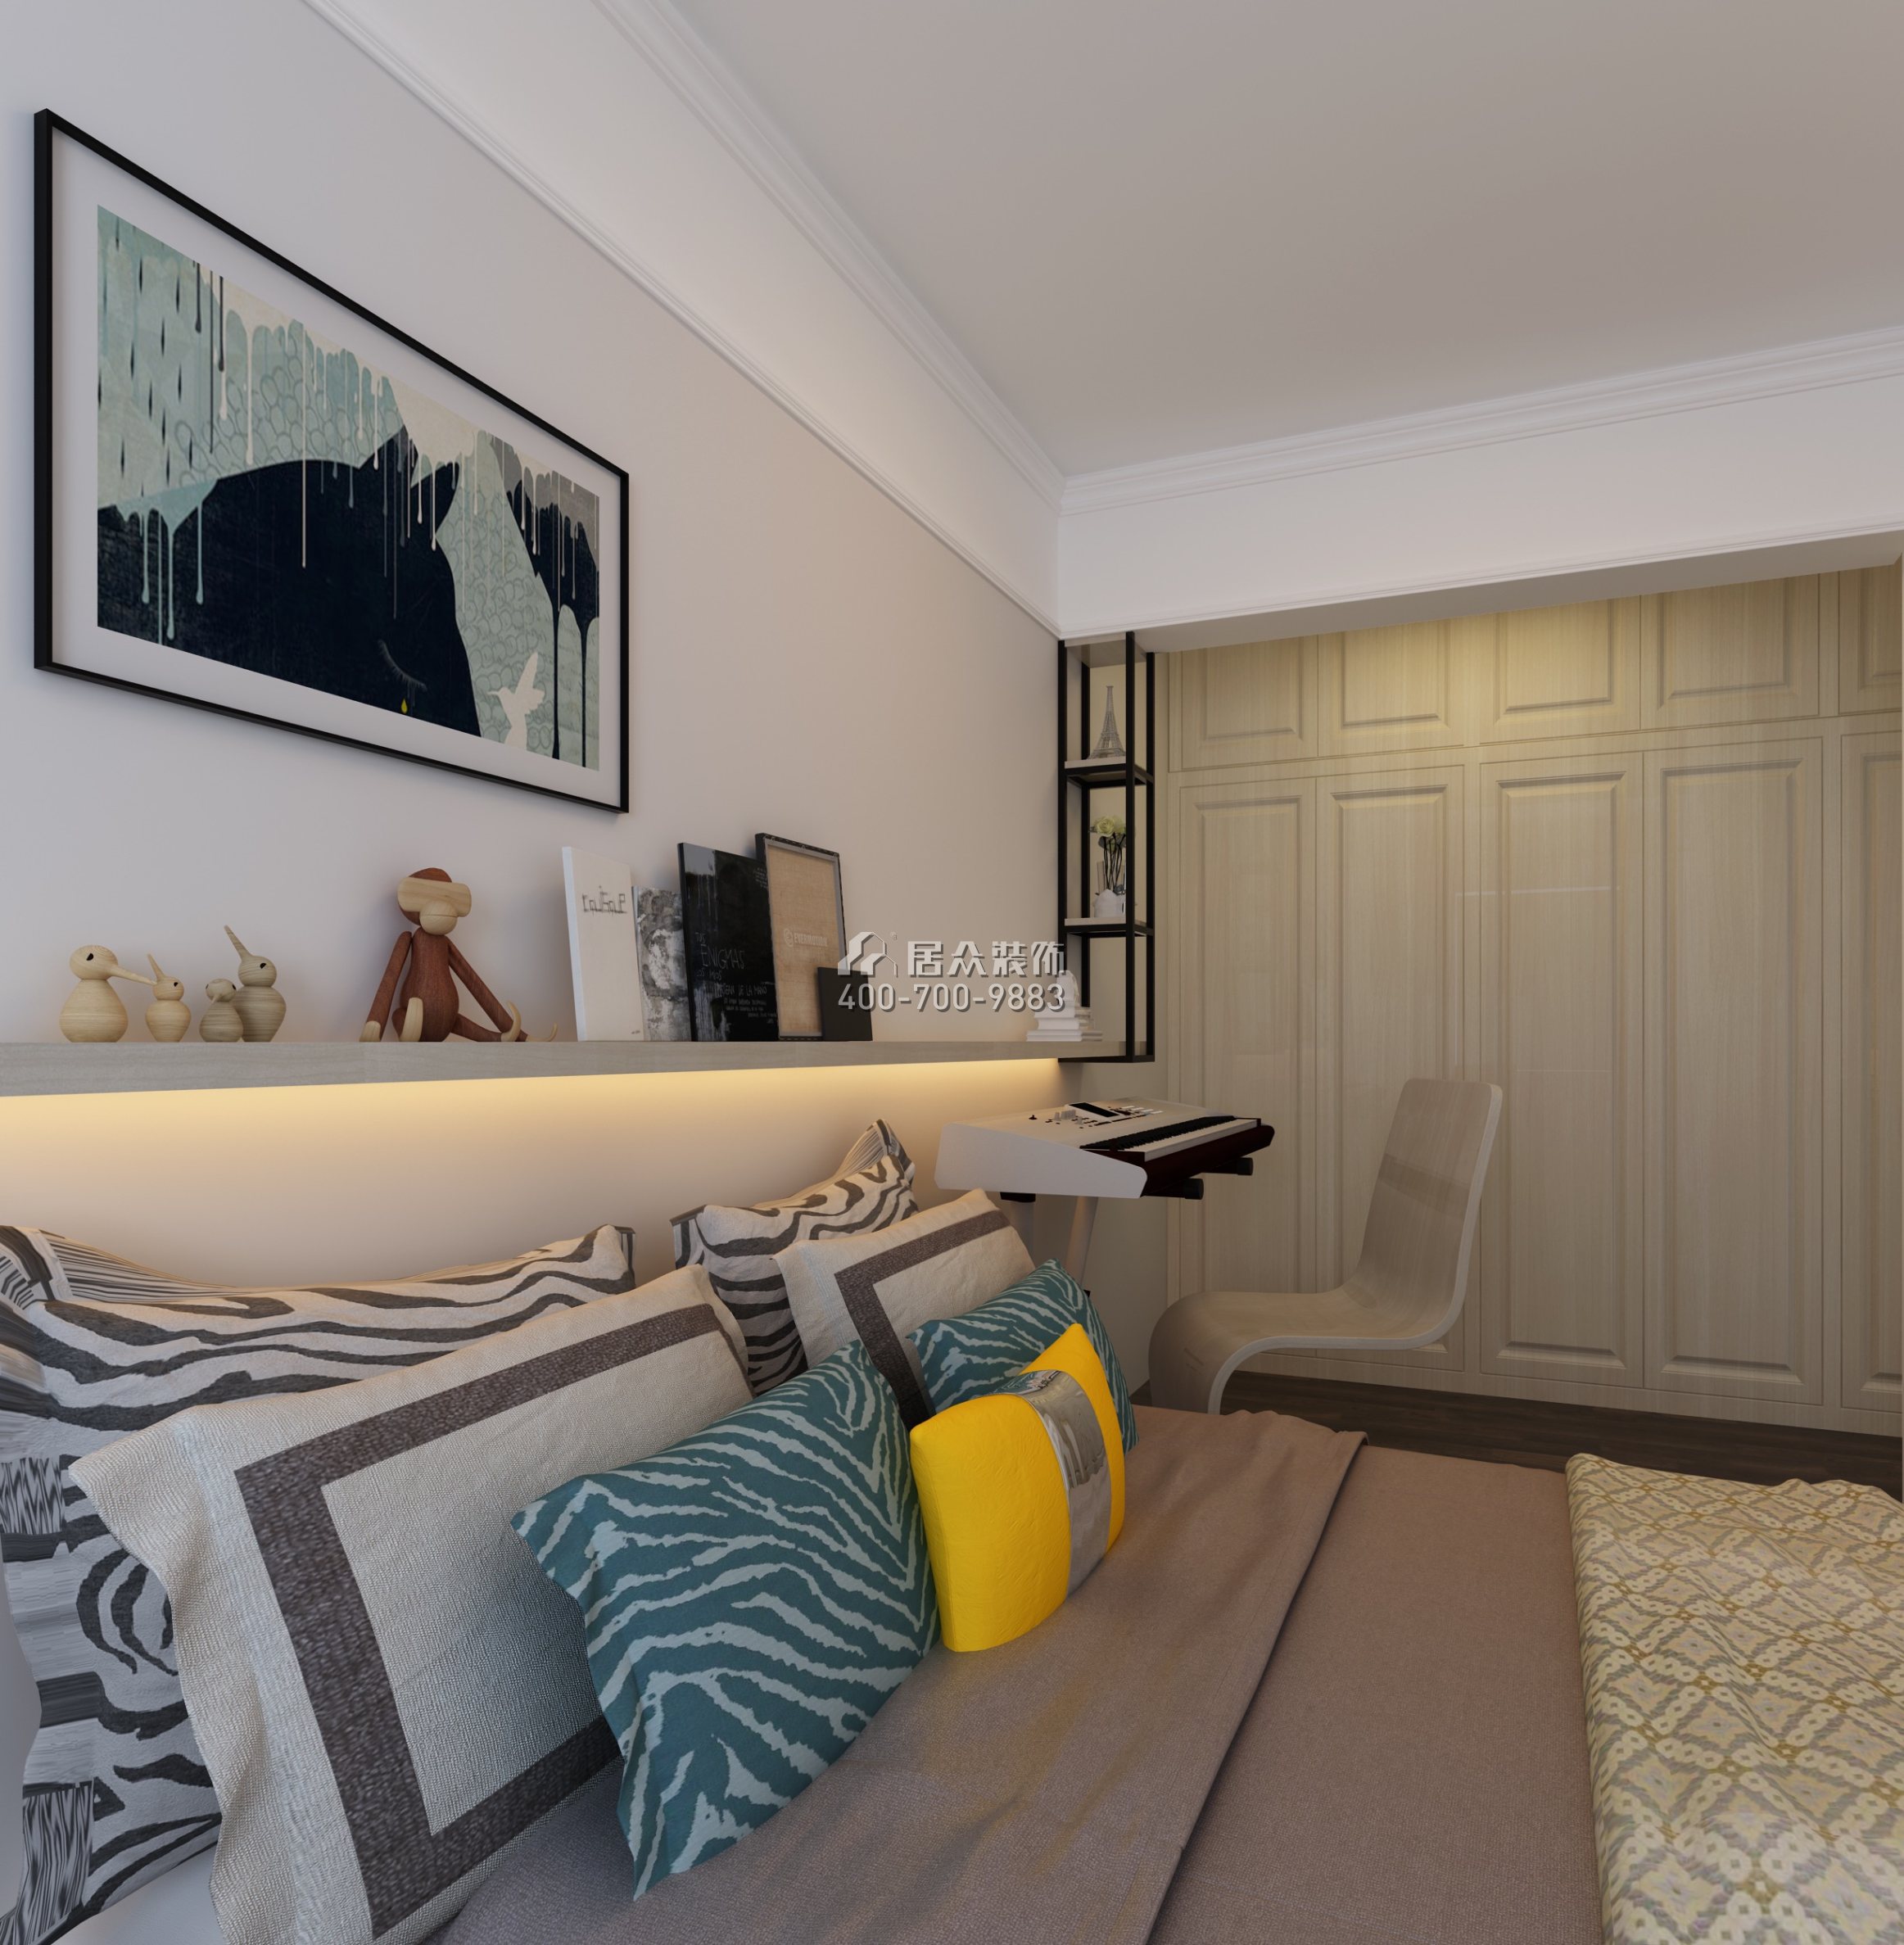 保利天匯128平方米現代簡約風格平層戶型臥室裝修效果圖